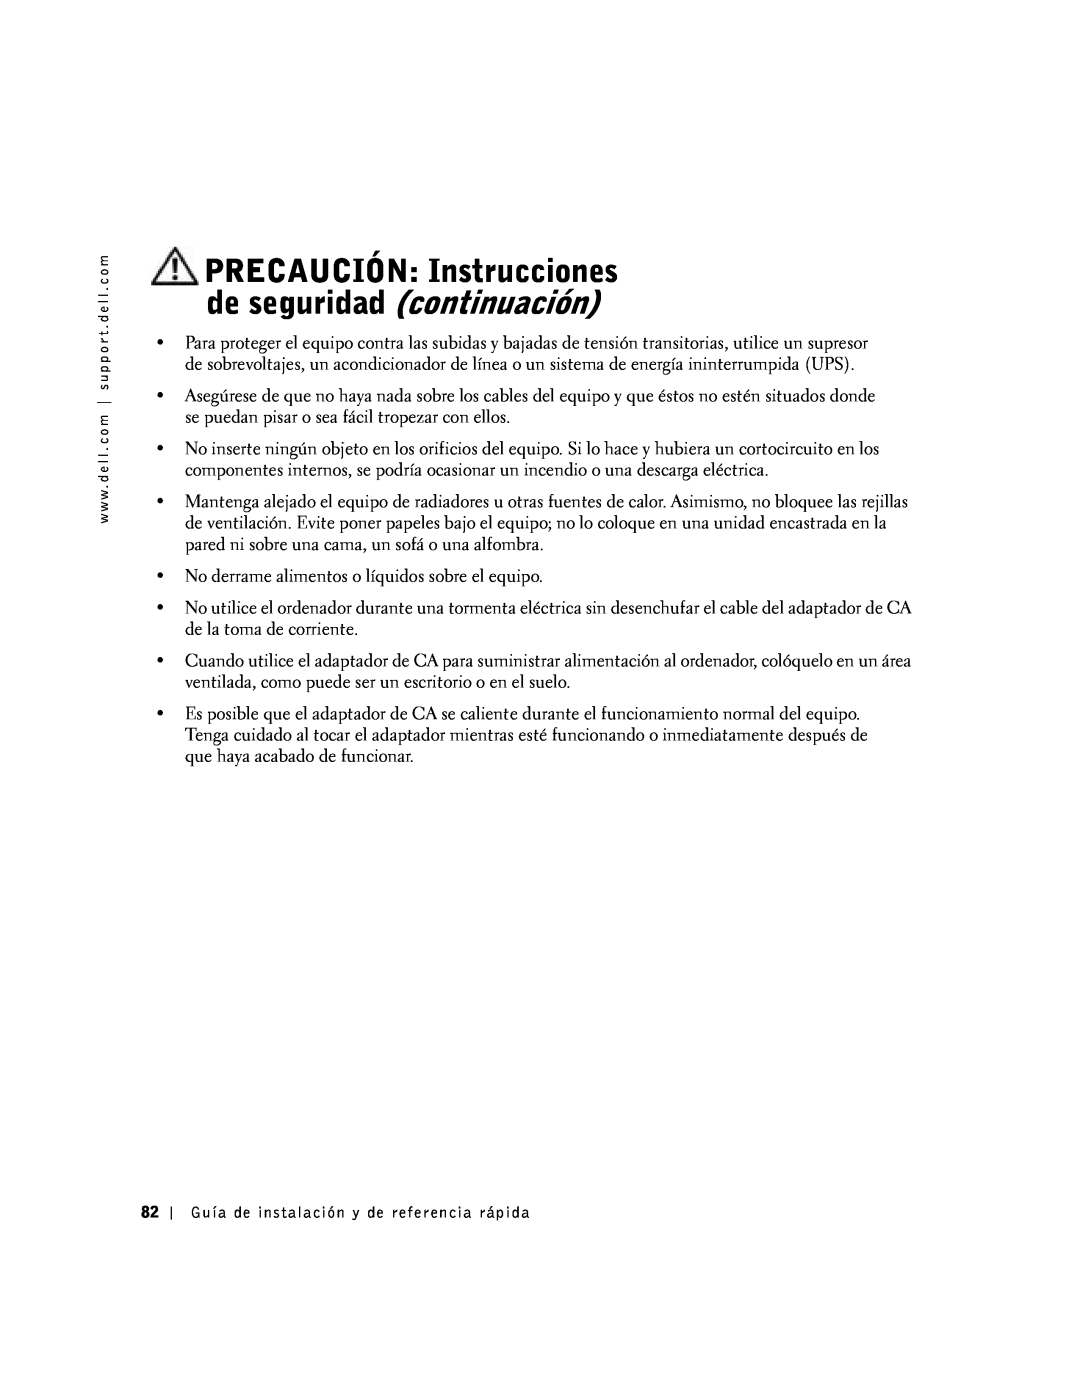 Dell SX manual PRECAUCIÓN Instrucciones de seguridad continuación 